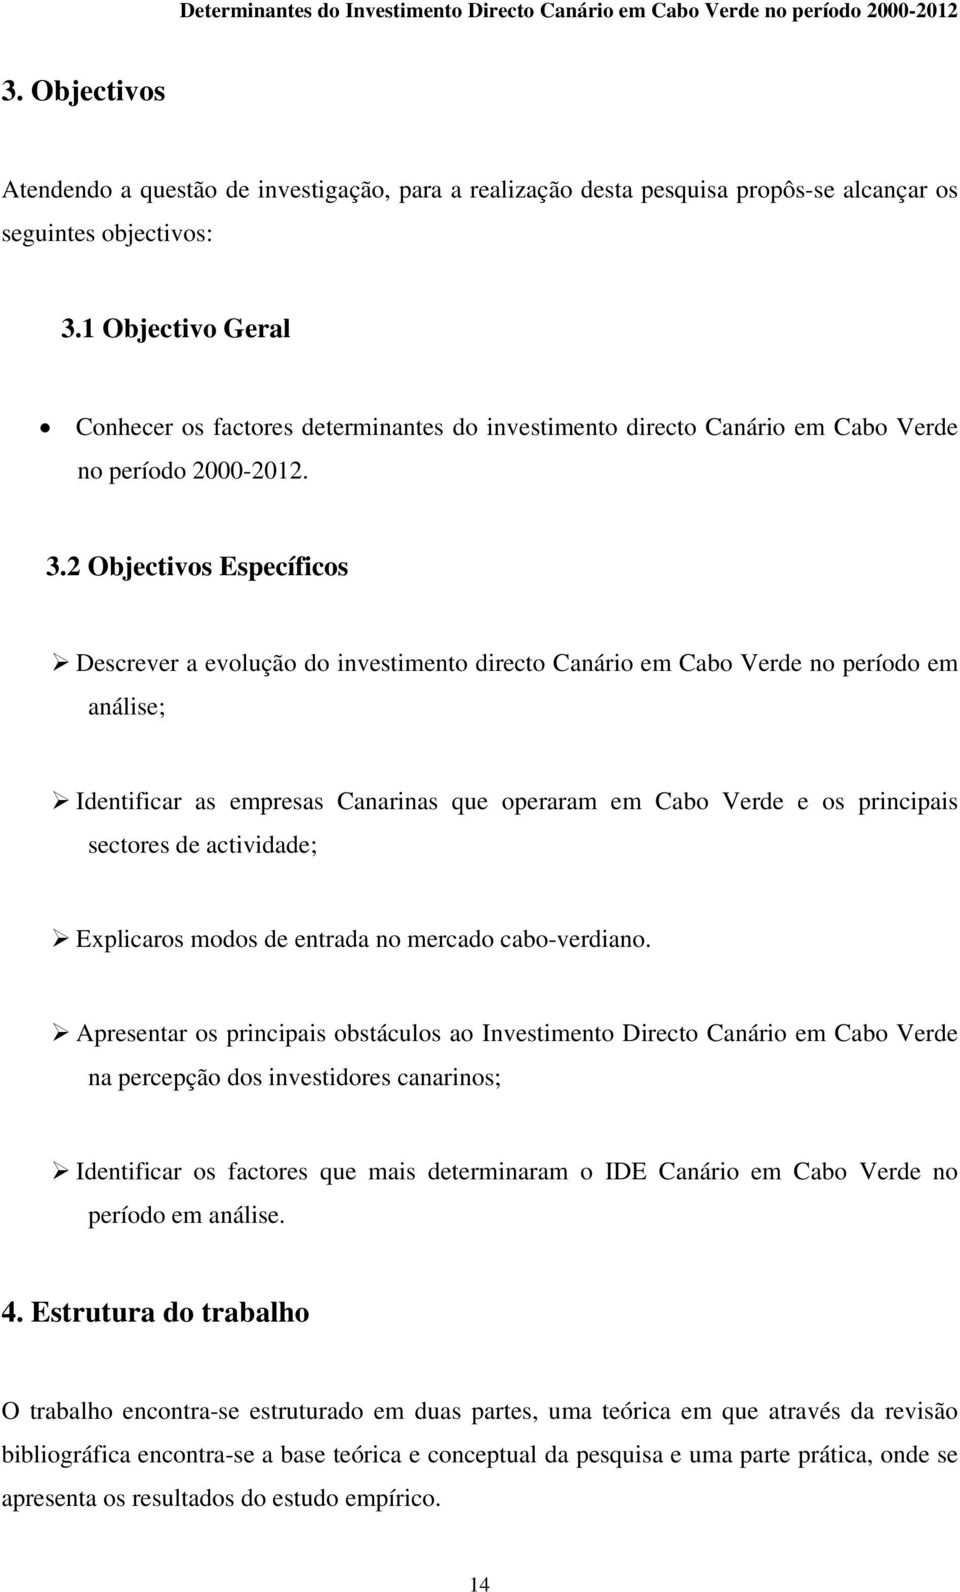 2 Objectivos Específicos Descrever a evolução do investimento directo Canário em Cabo Verde no período em análise; Identificar as empresas Canarinas que operaram em Cabo Verde e os principais